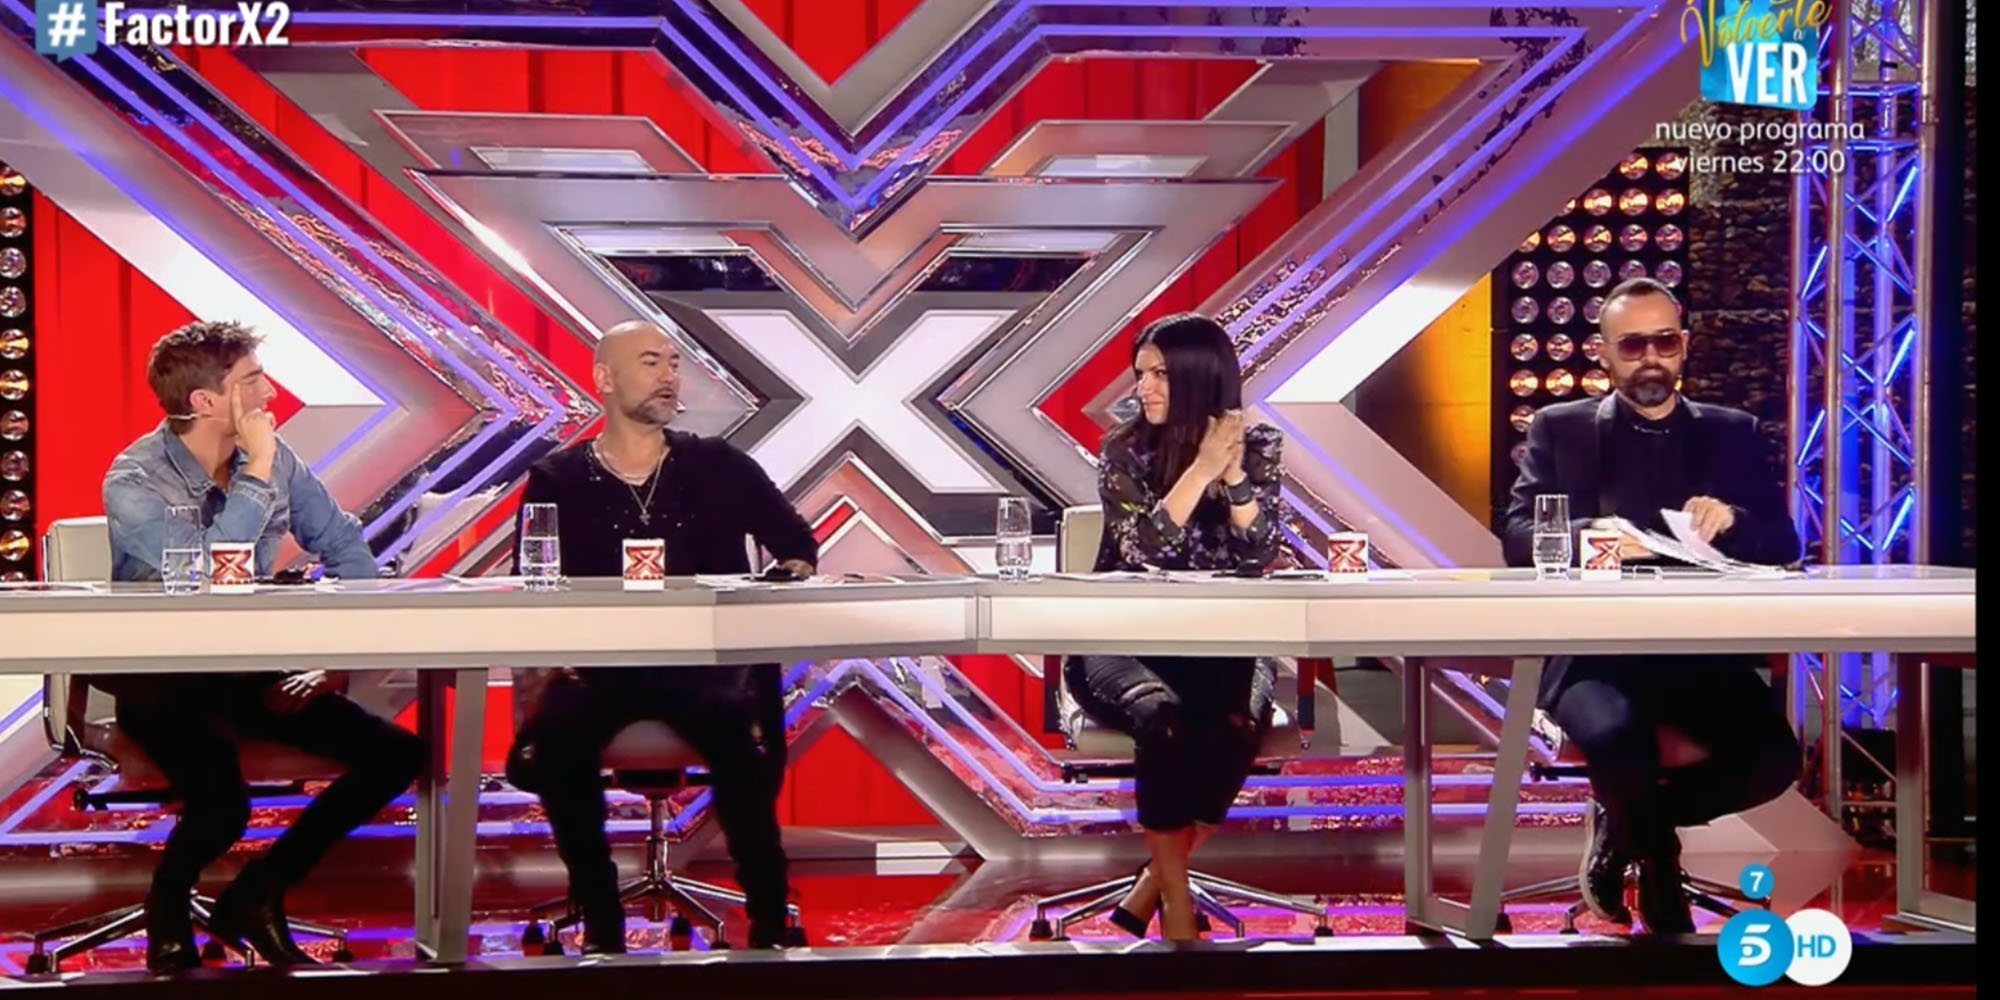 Las historias de los participantes de 'Factor X': "Mi madre pasó mucho tiempo en coma"